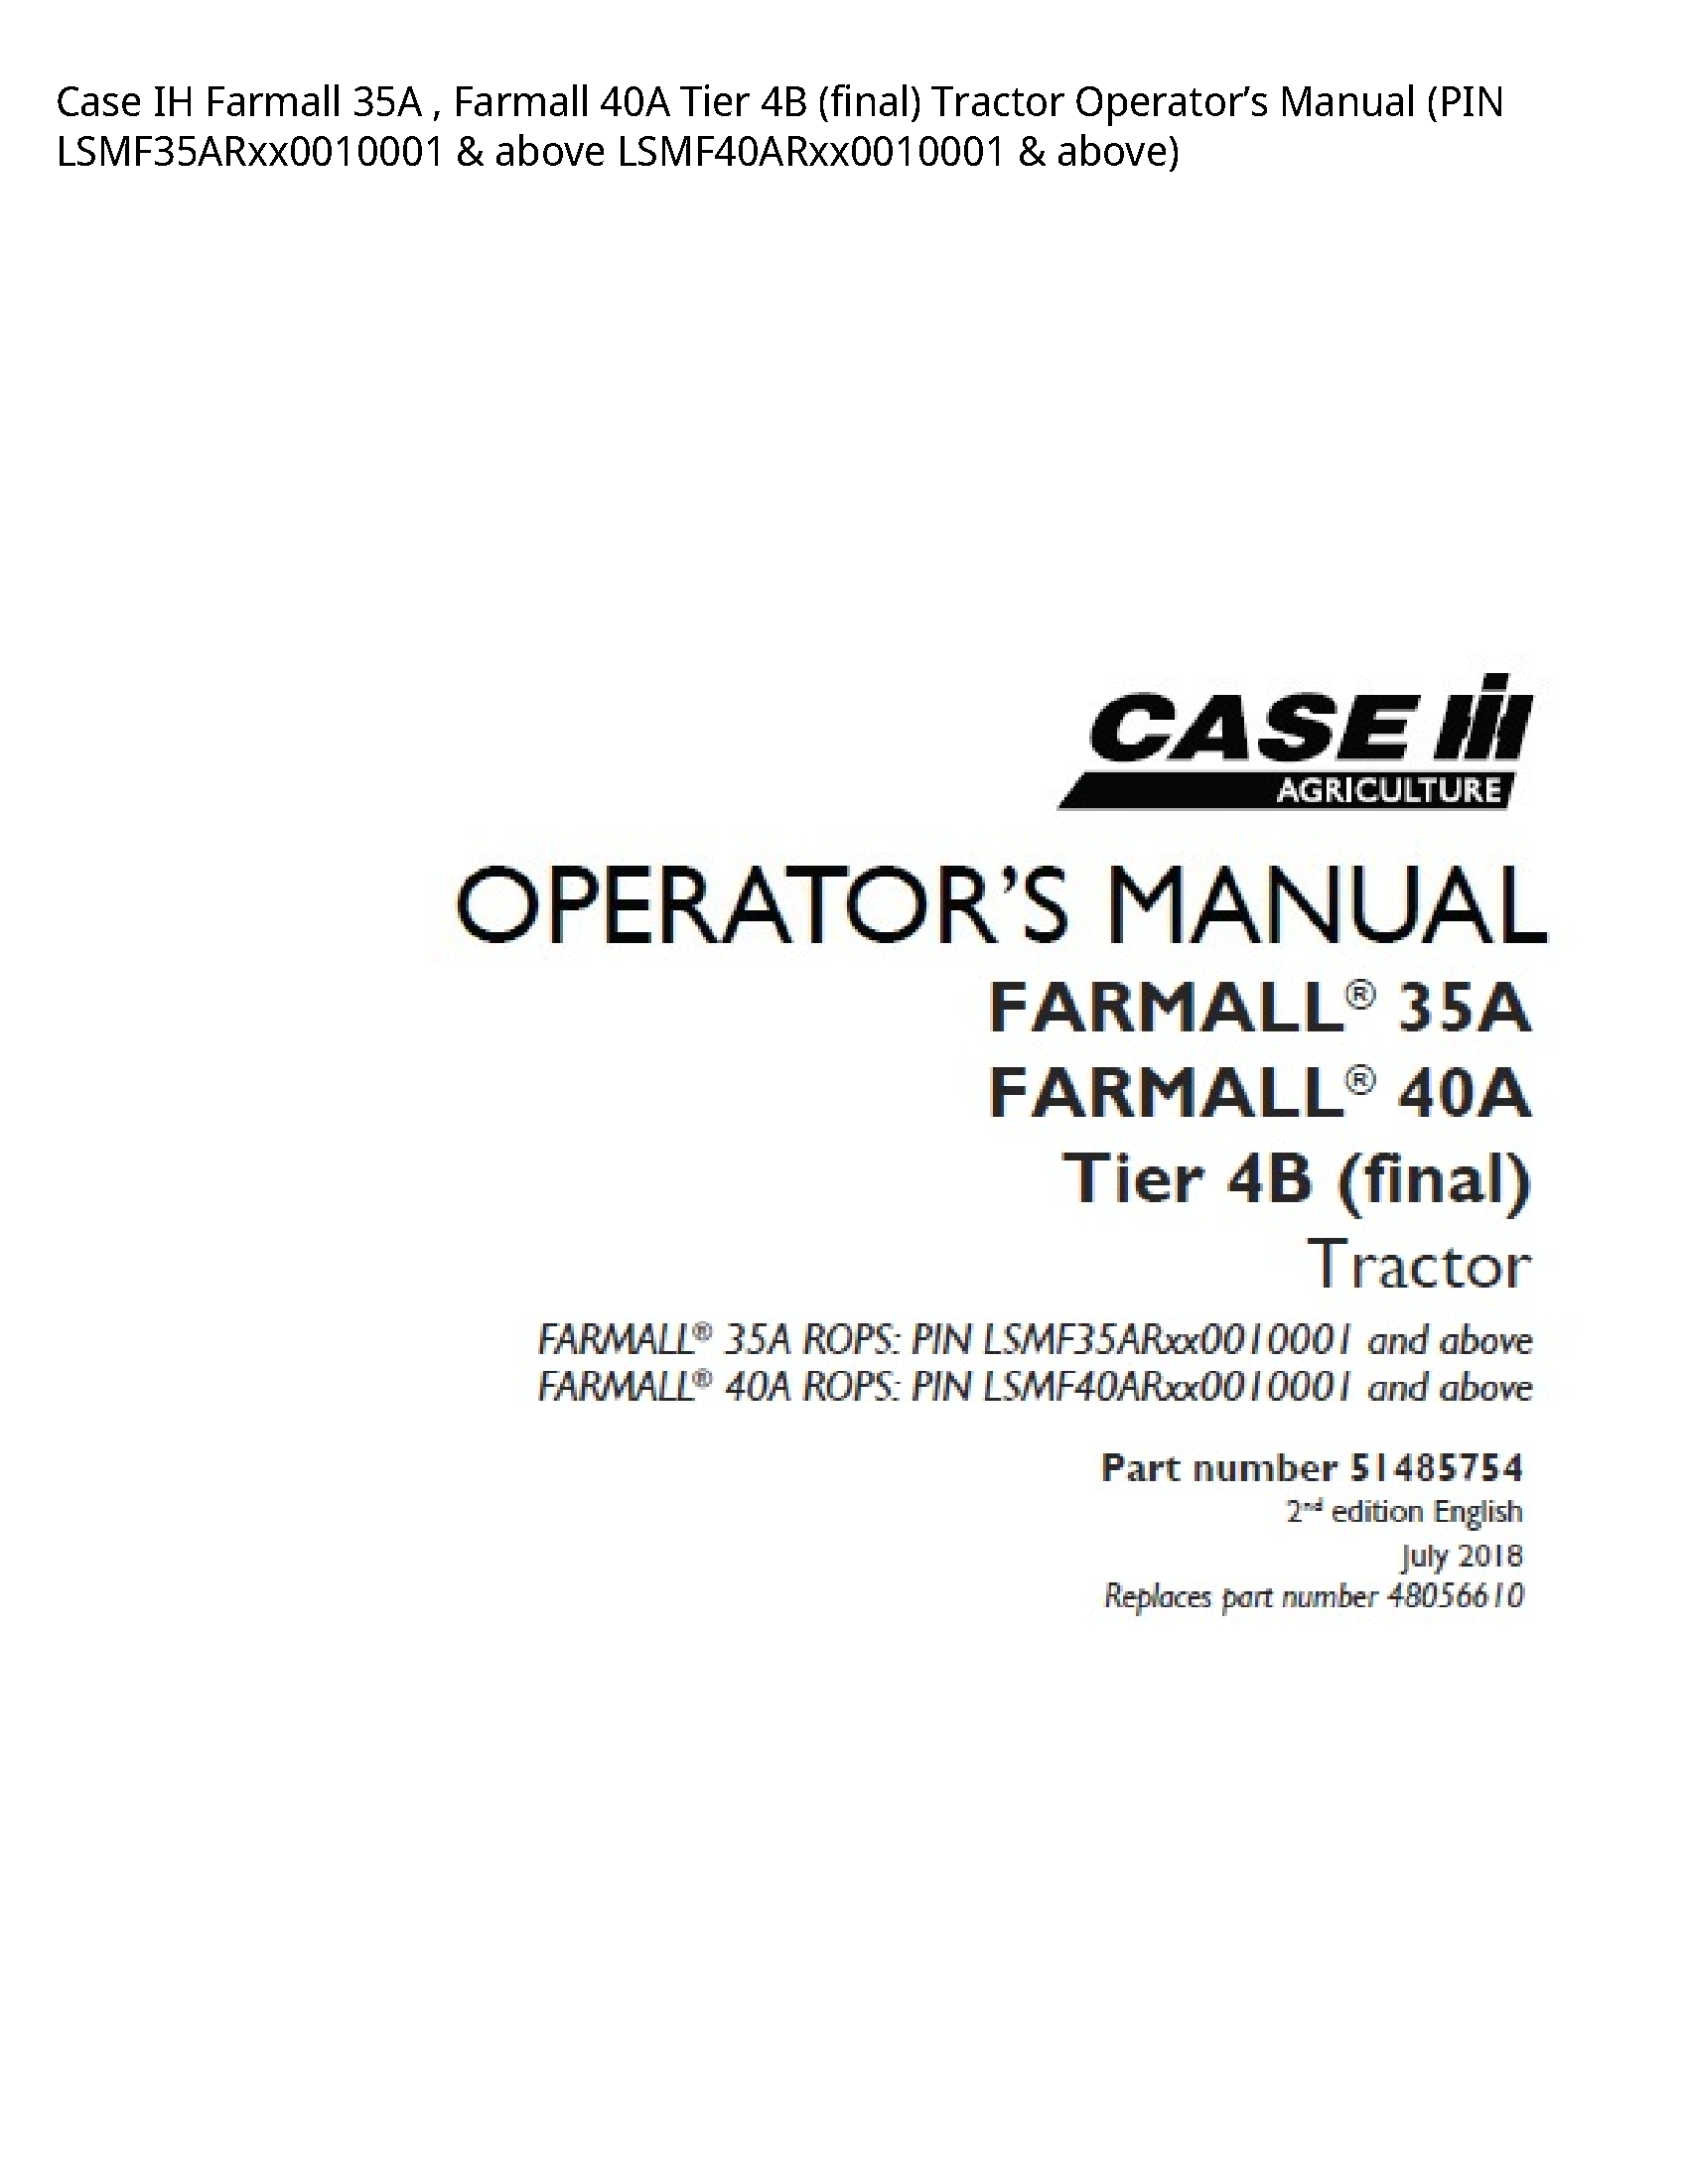 Case/Case IH 35A IH Farmall Farmall Tier (final) Tractor Operator’s manual